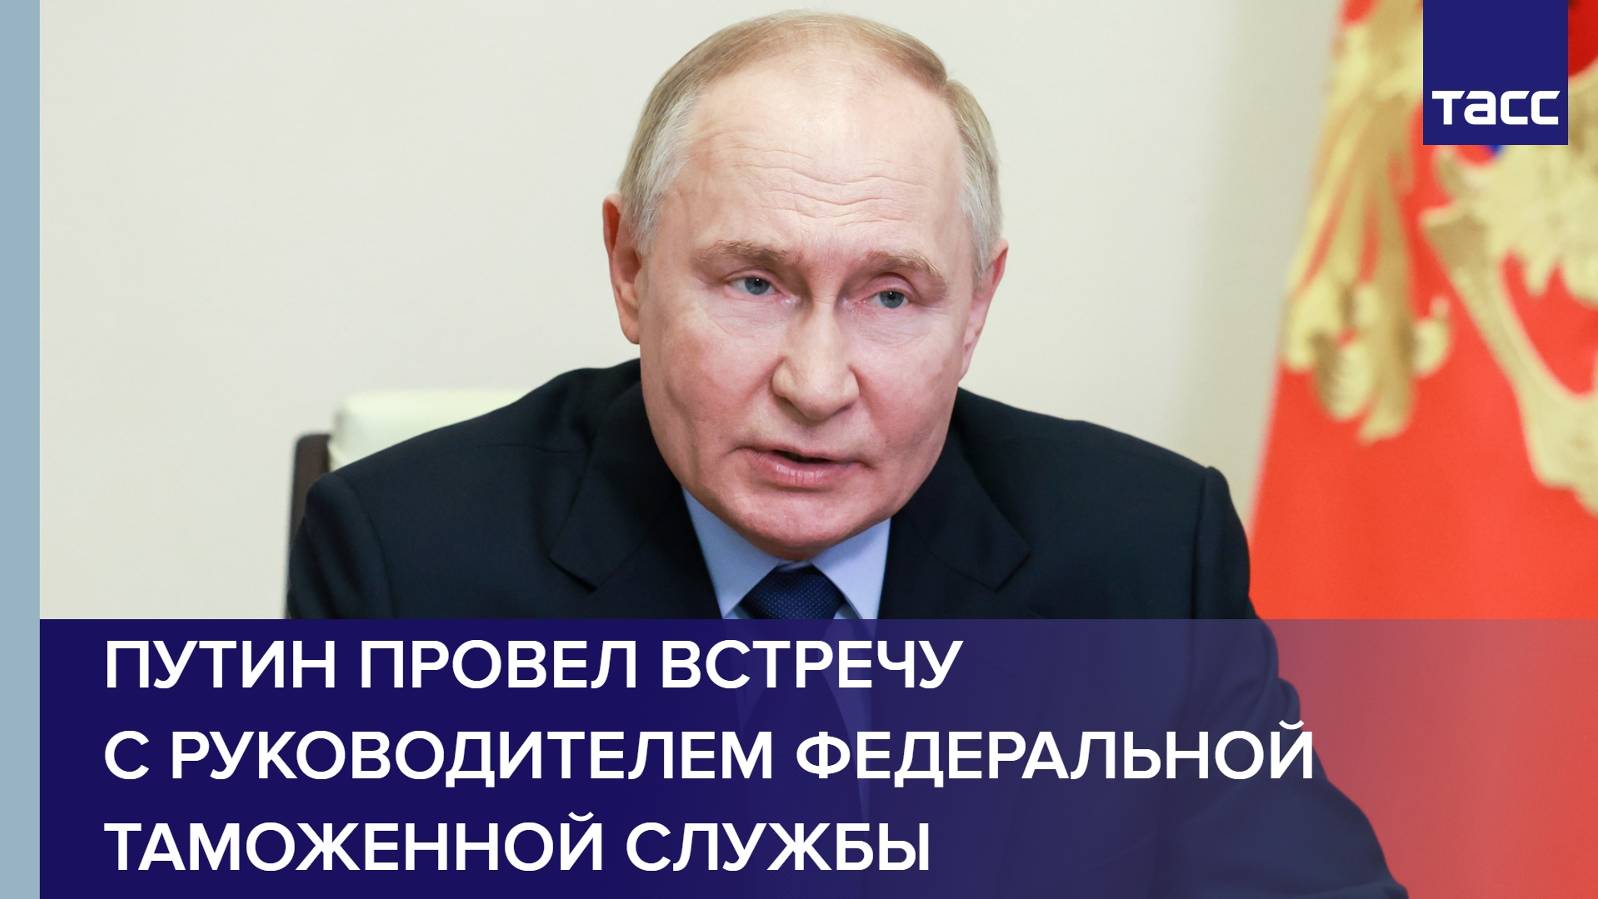 Путин провел встречу с руководителем Федеральной таможенной службы